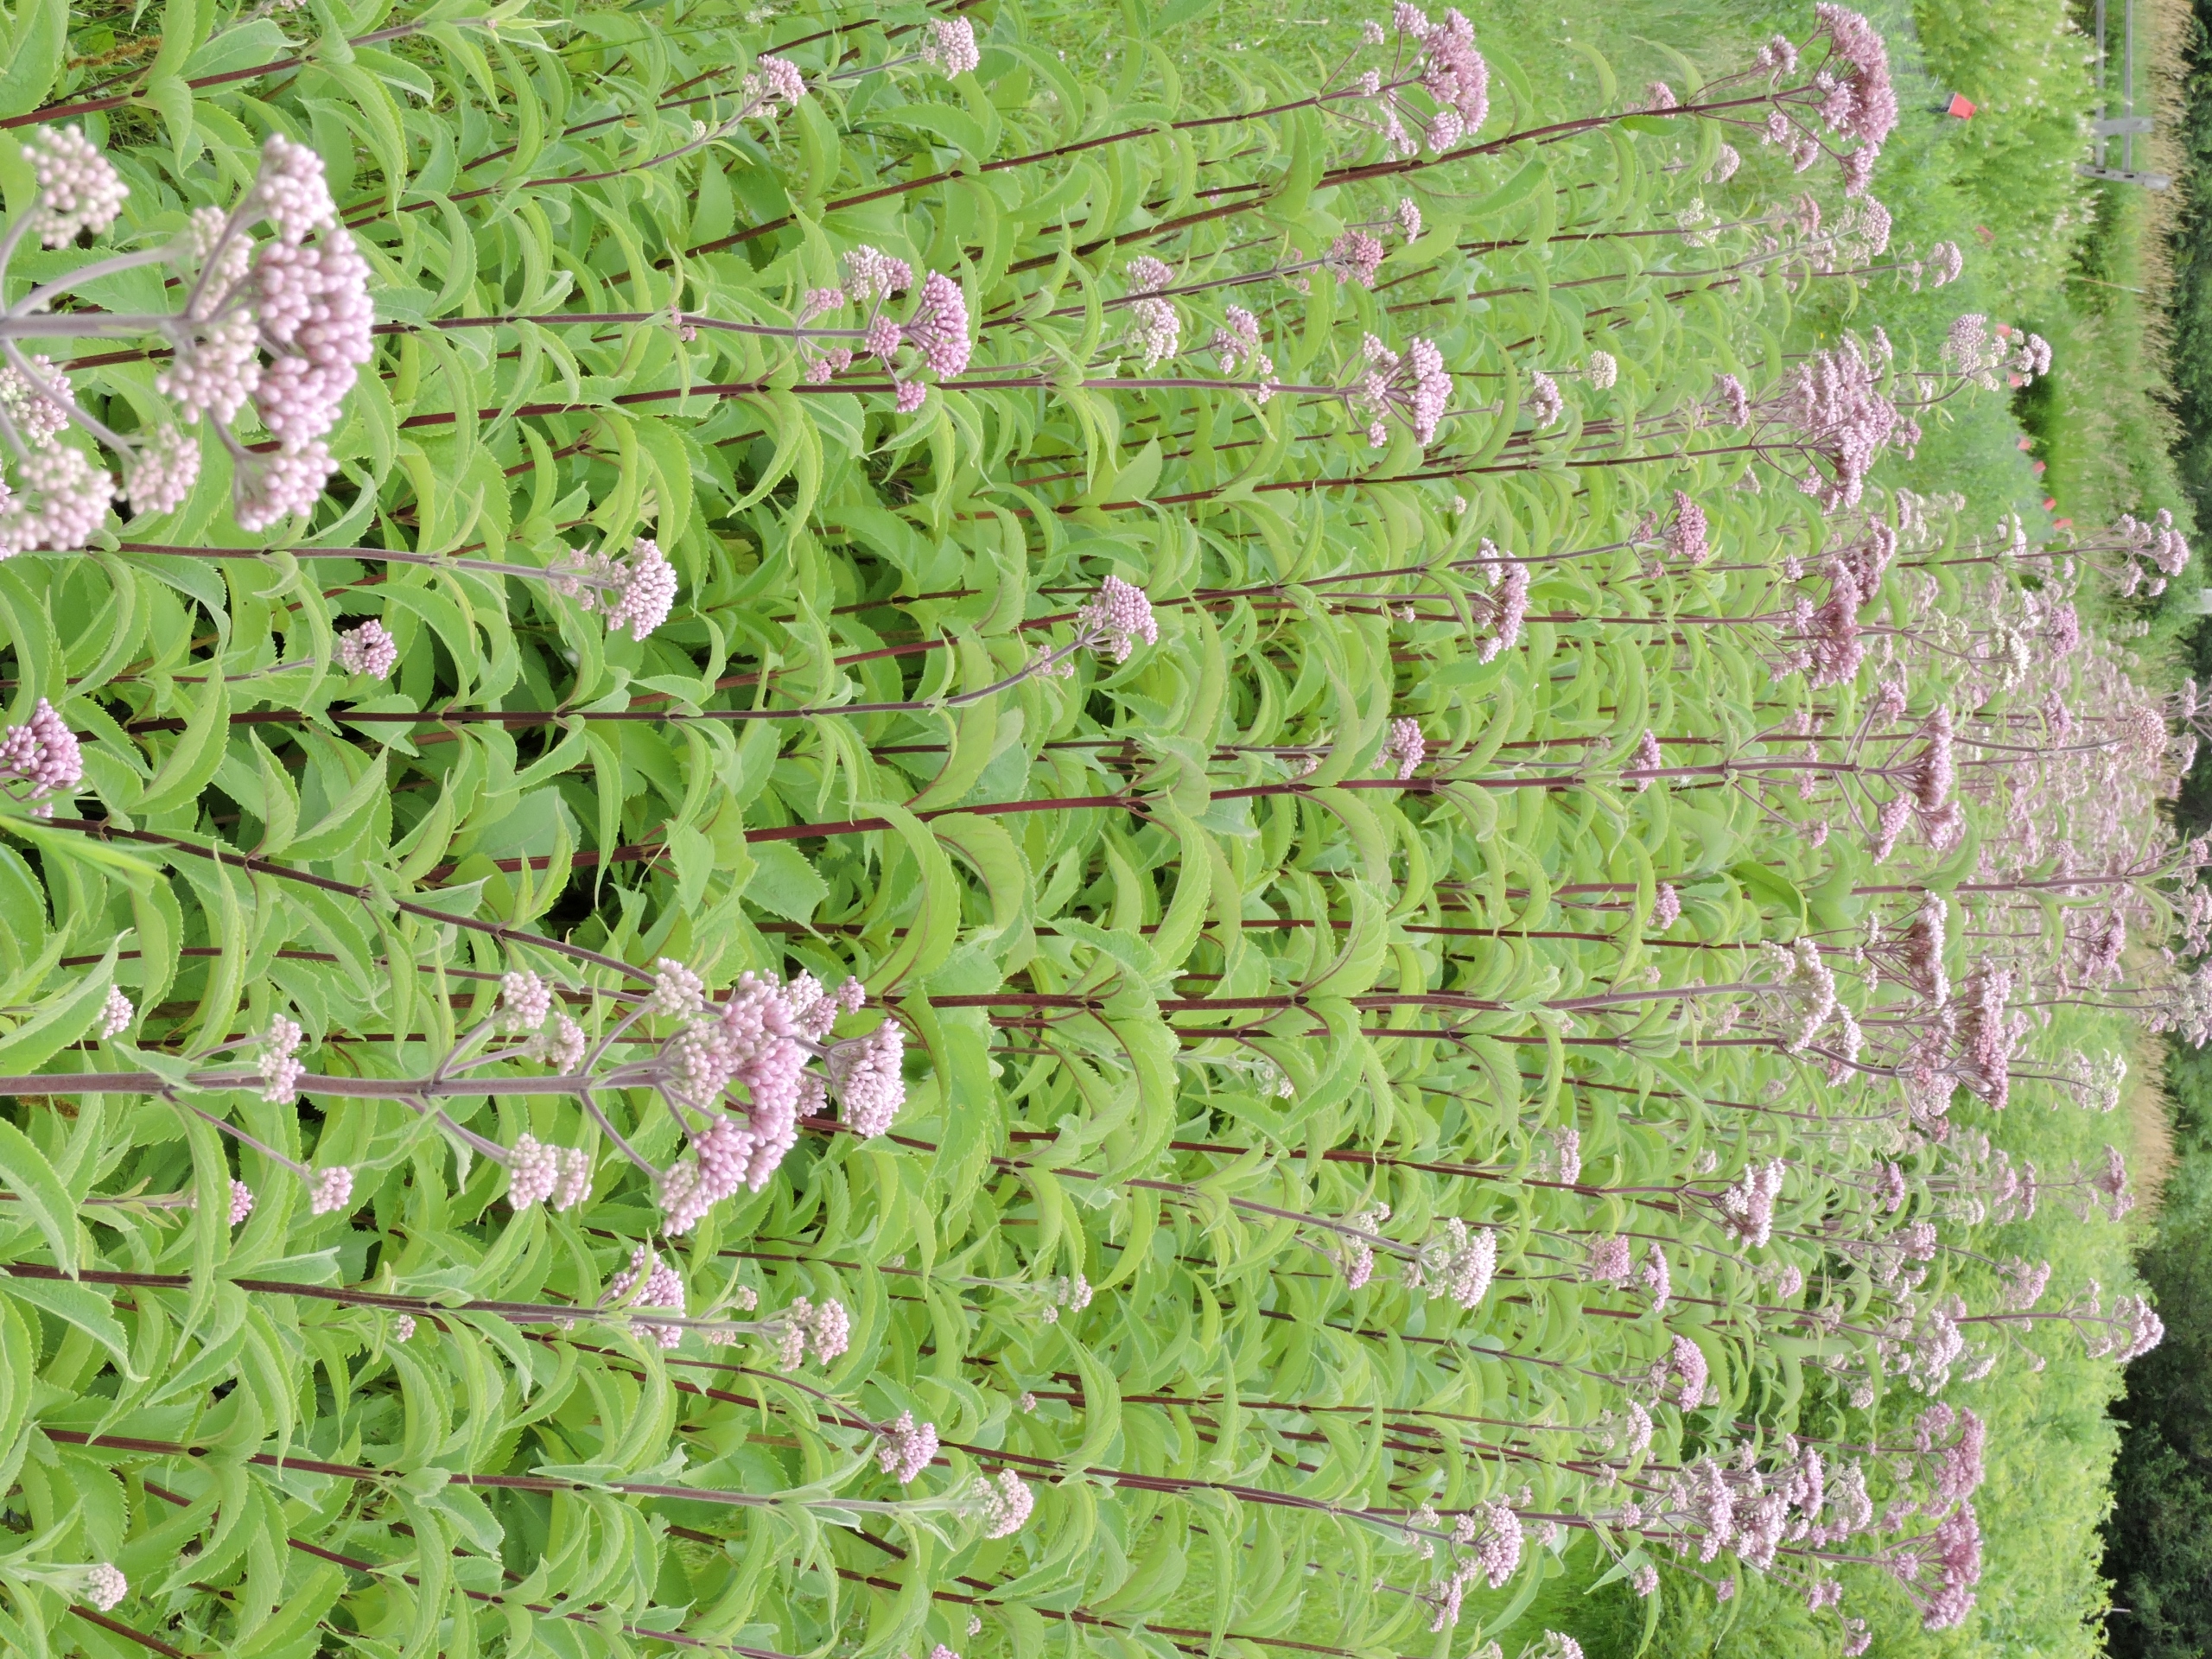 Eutrochium maculatum, whole plant